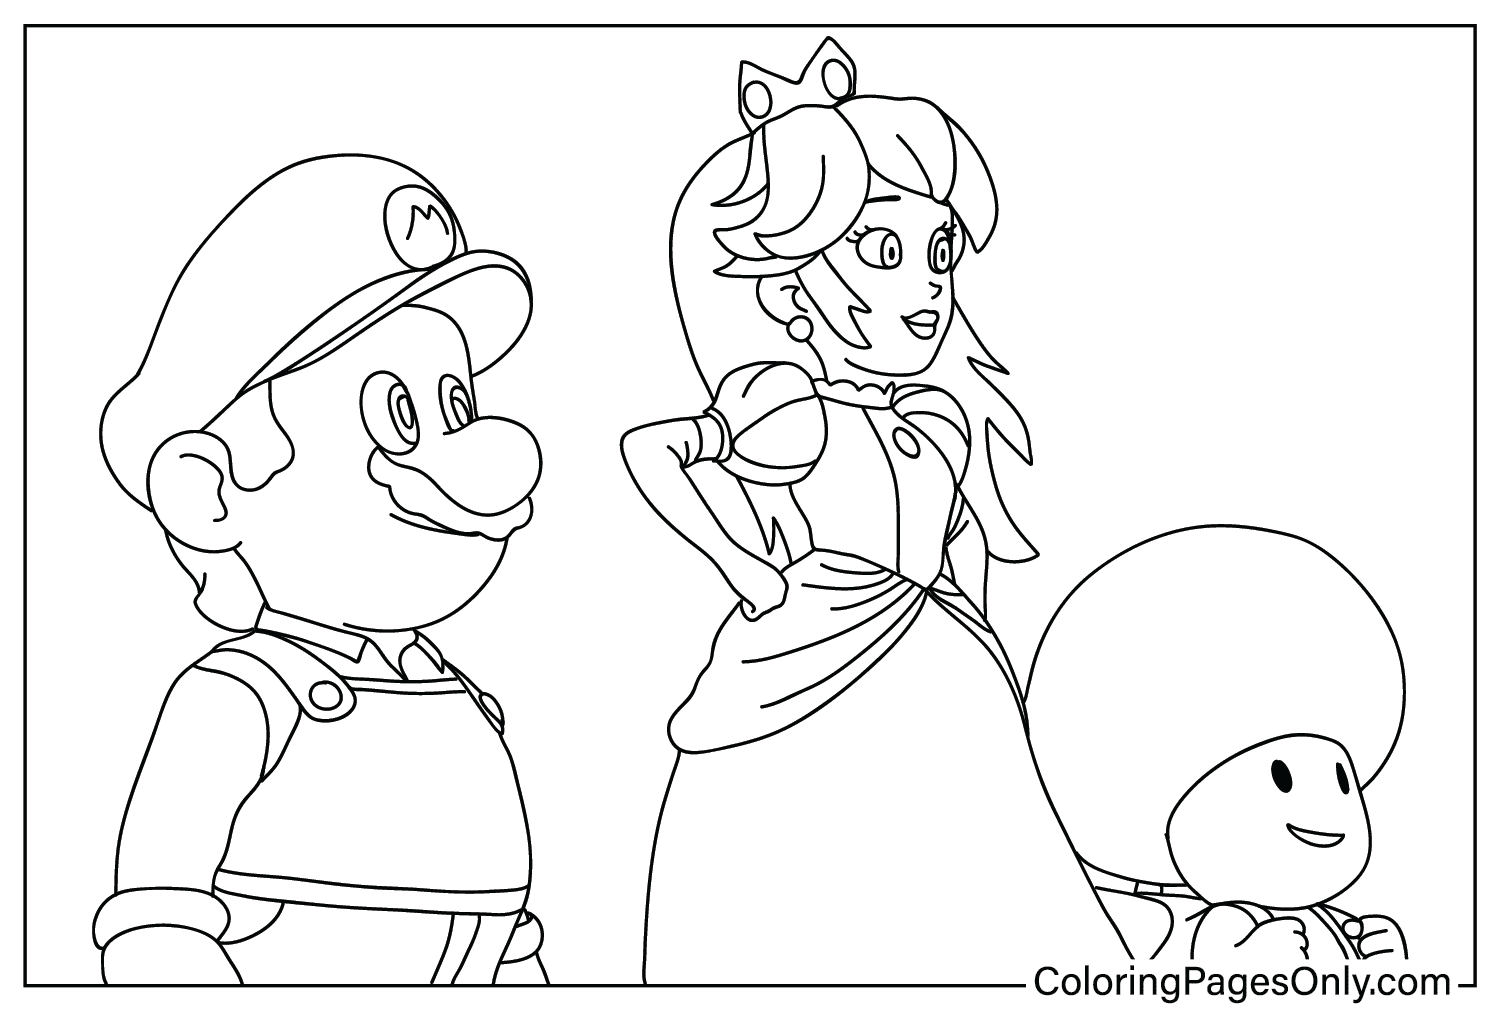 Mario, la principessa e il rospo da colorare dal film Super Mario Bros.